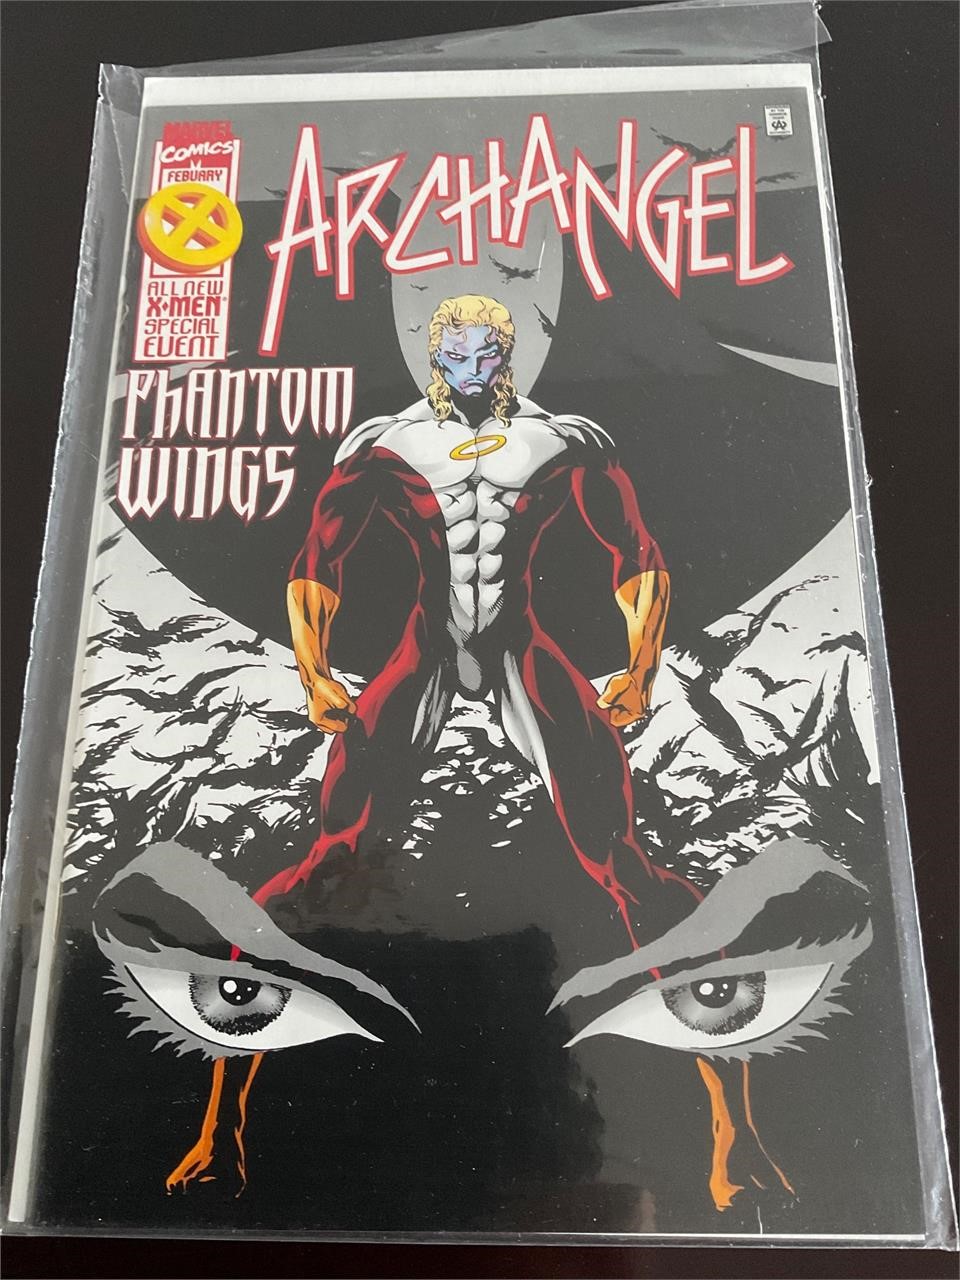 Archangel phantom wings vintage